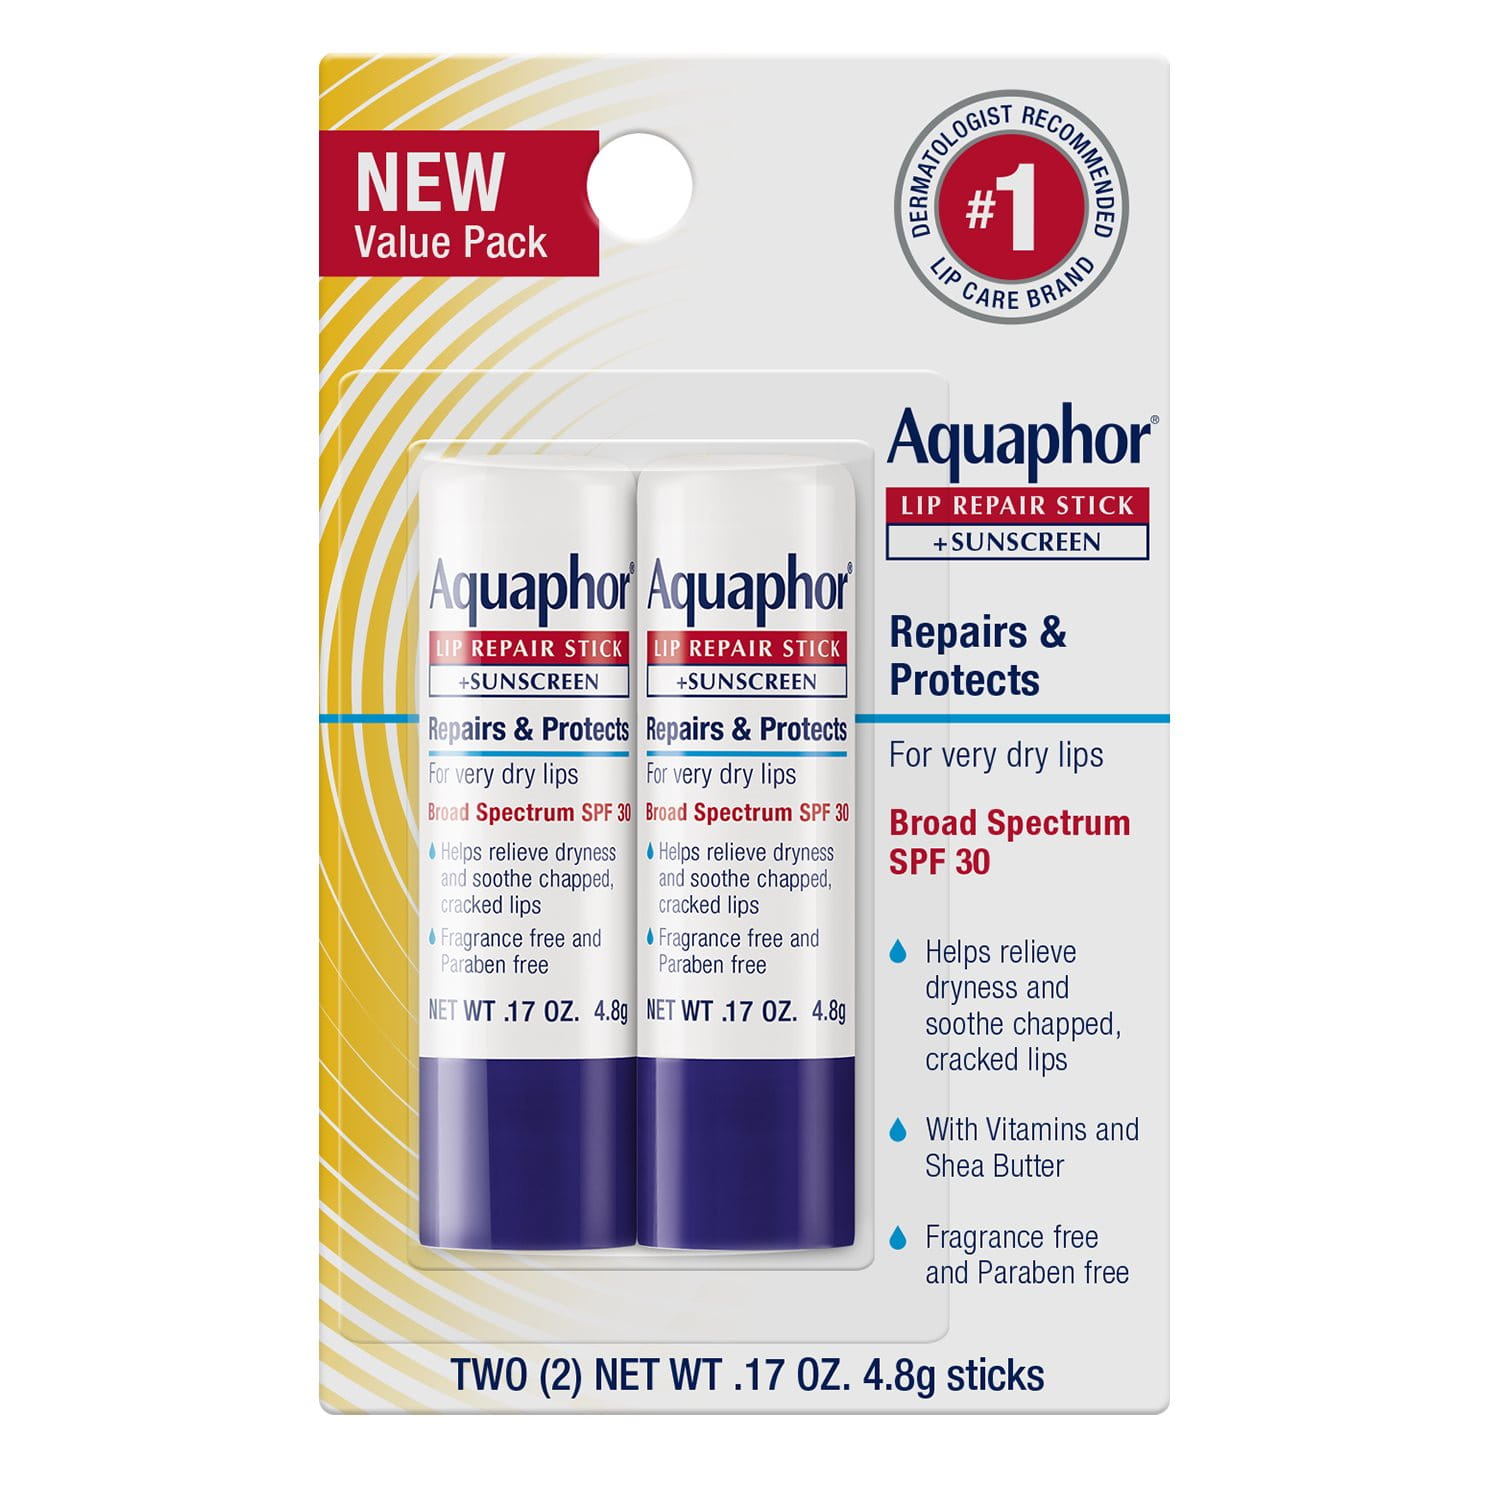 Aquaphor® Lip Repair Stick + Sunscreen (Dual Pack)